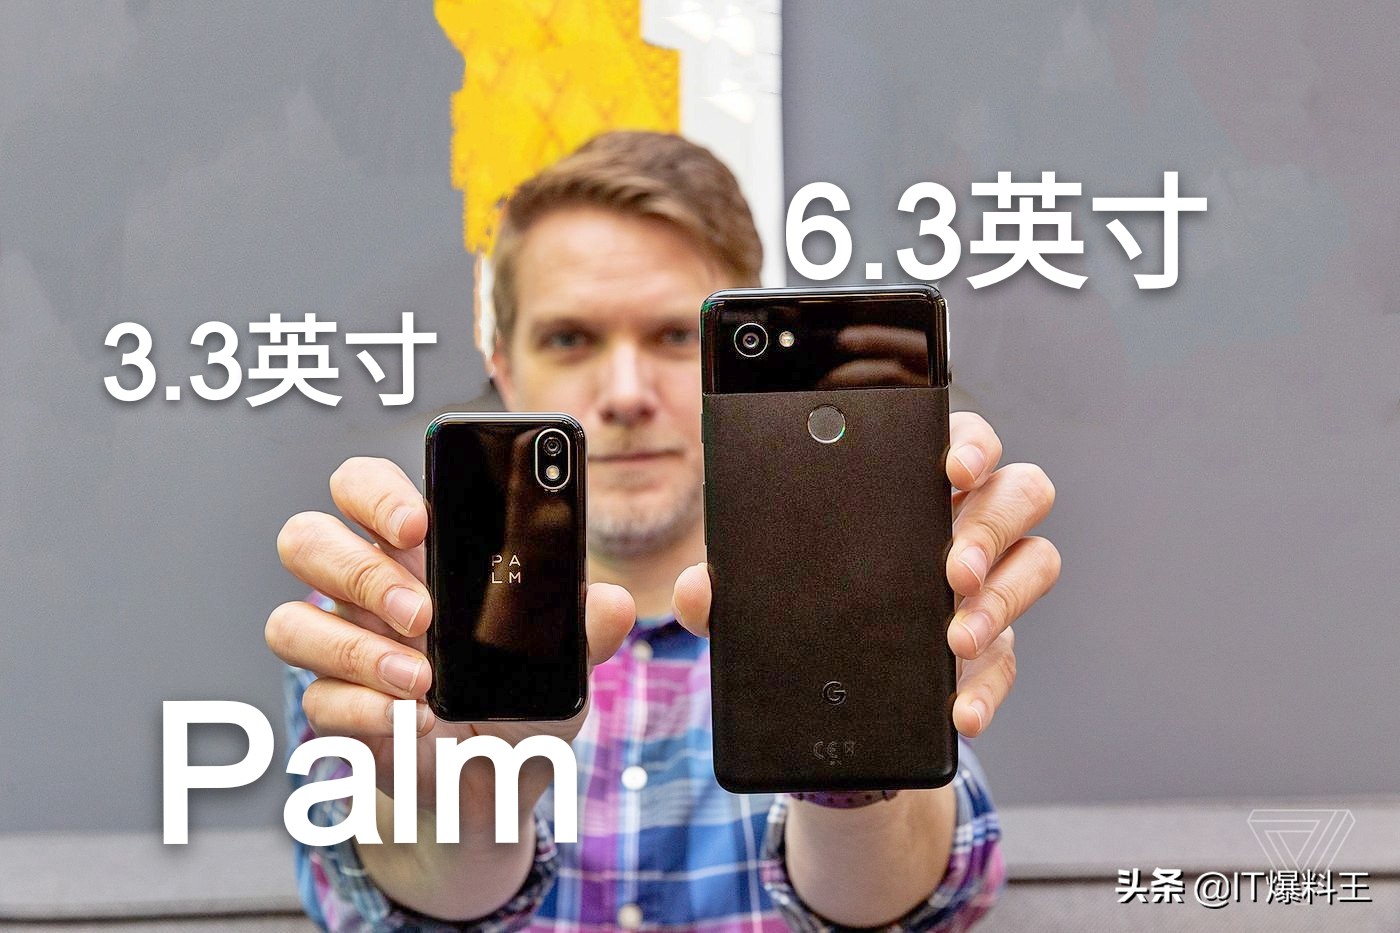 3.3寸小钢炮车型Palm宣布入网许可证：适用IP68防潮、市场价2478元